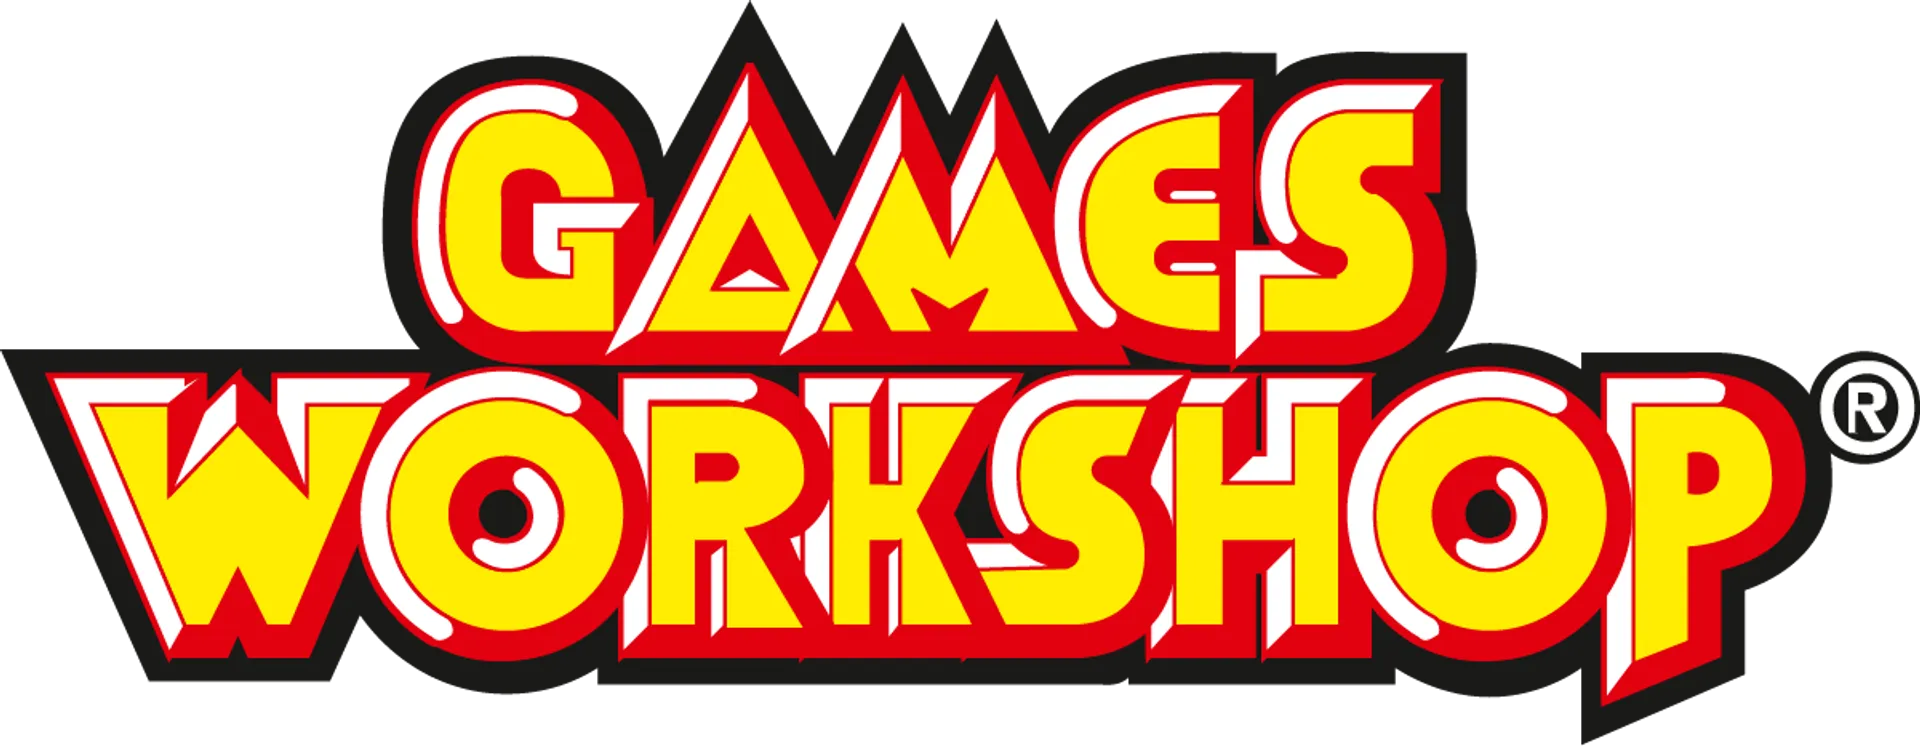 GAMES WORKSHOP logo